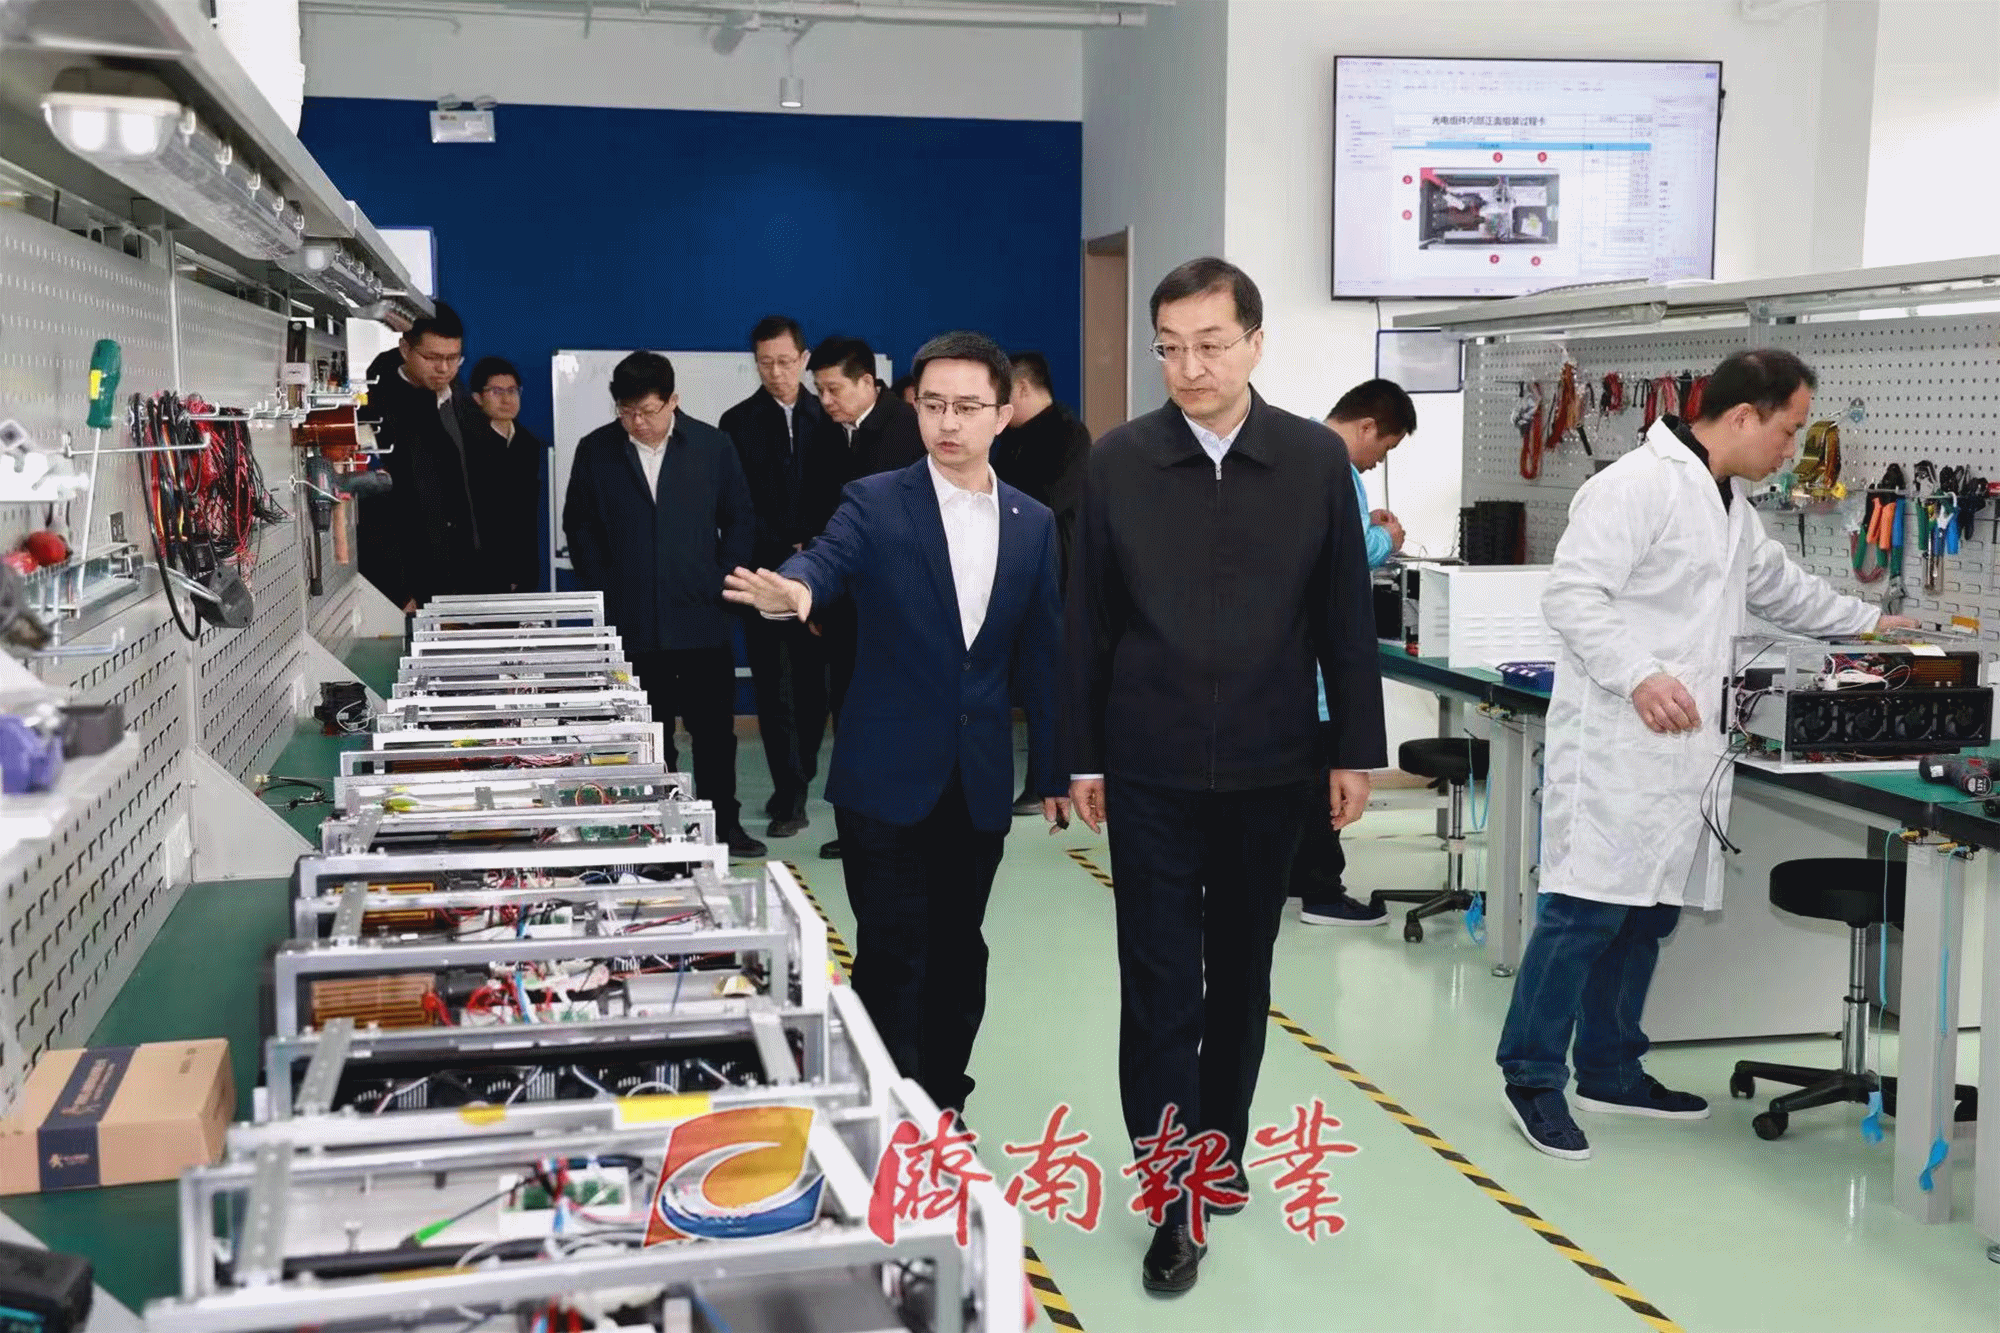 刘强到济南高新区调研时强调 大力发展新质生产力 为强省会建设作出更大贡献